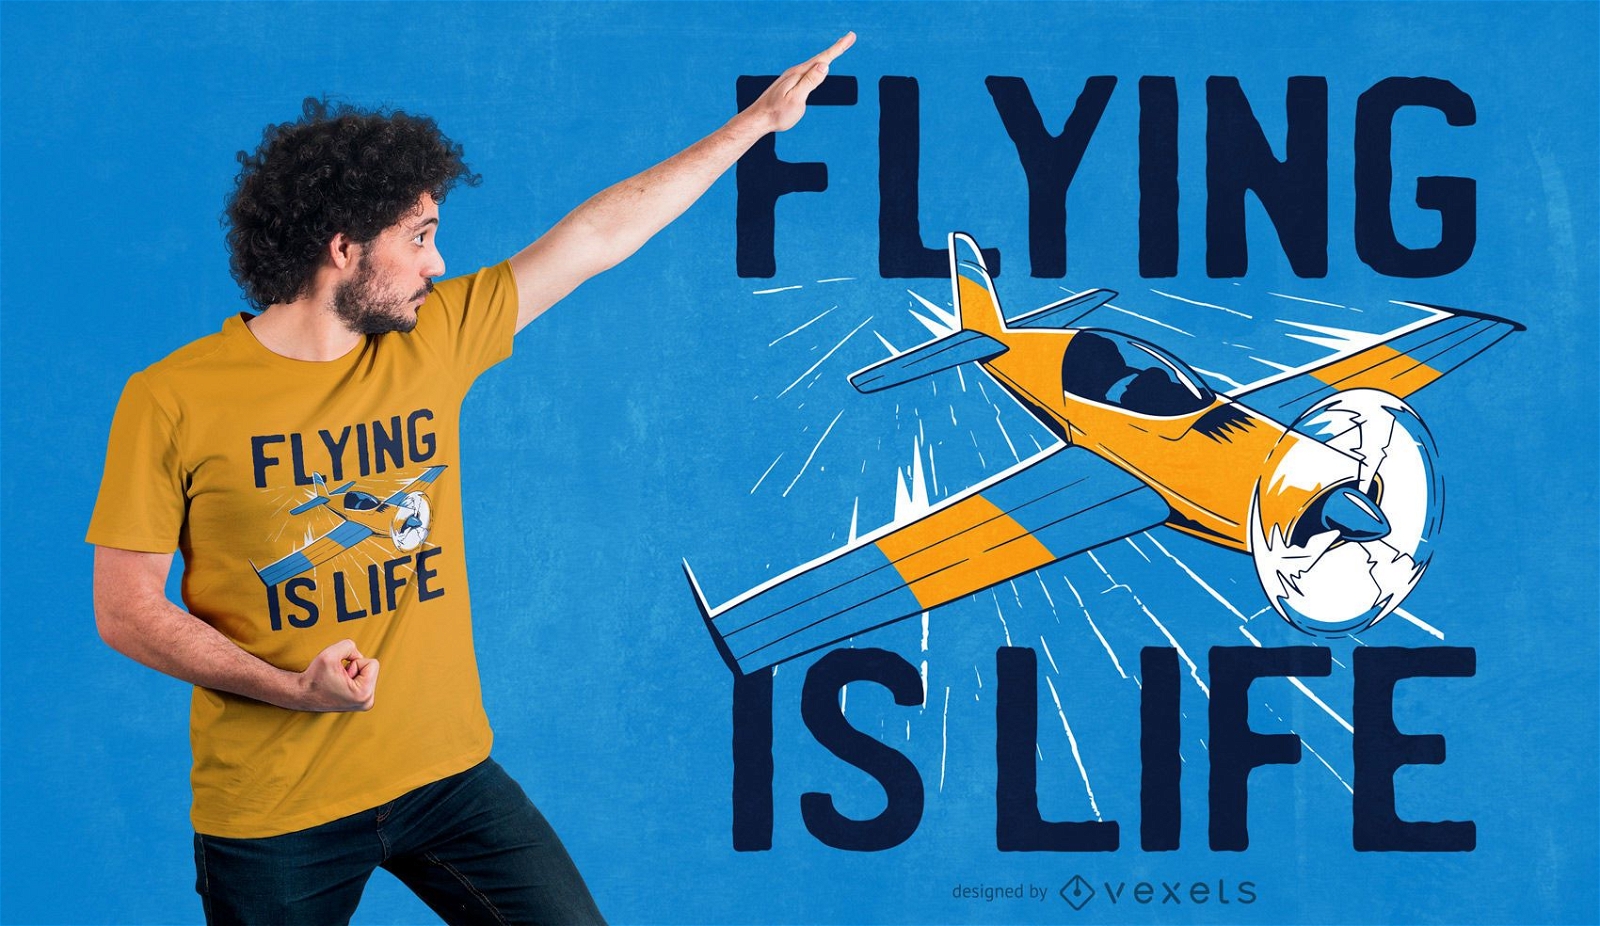 Voar é o design de camisetas da vida